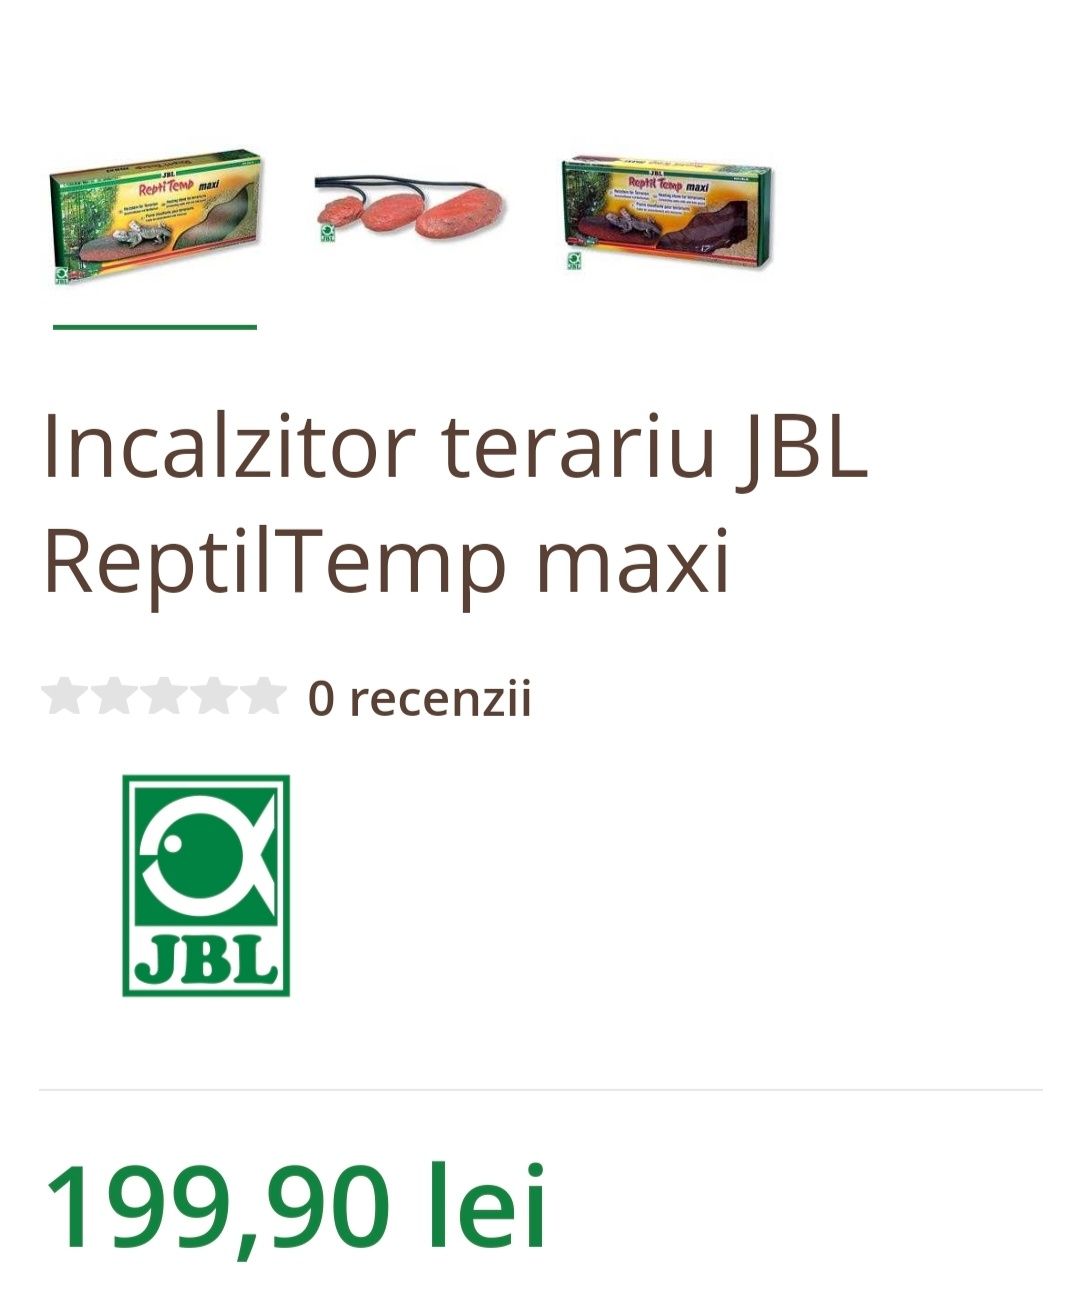 Incalzitor terariu JBL ReptilTemp maxi